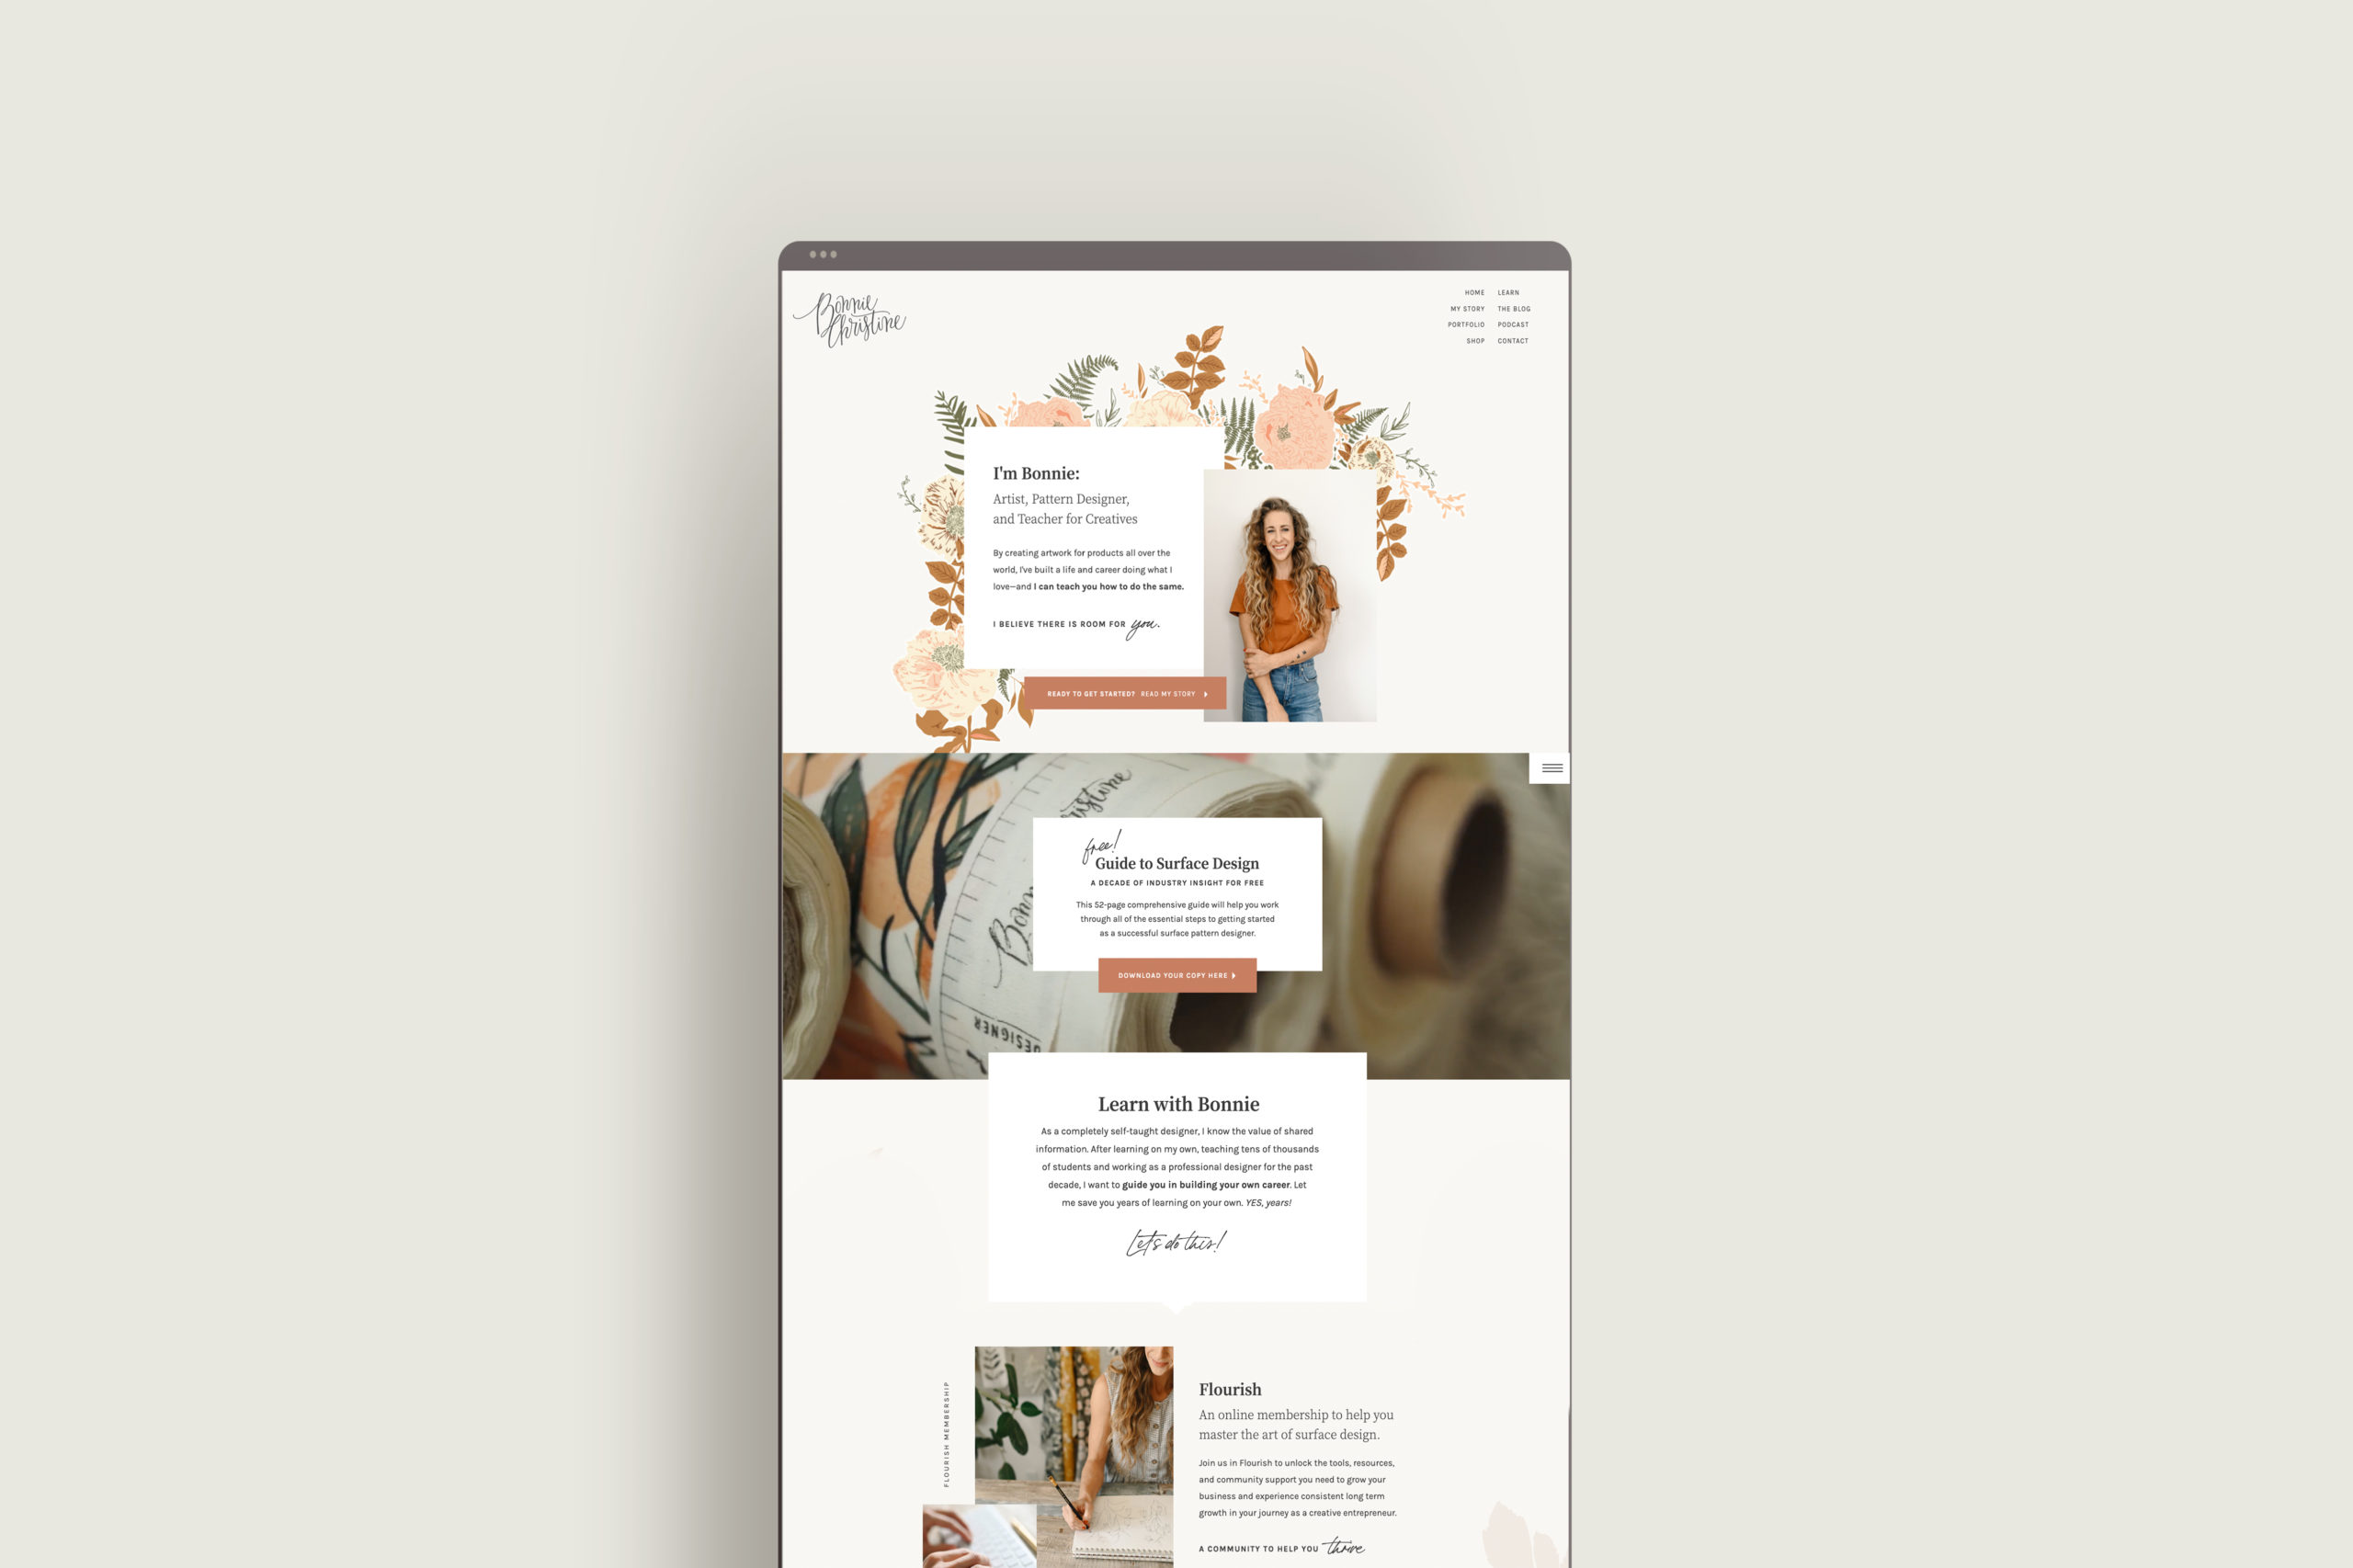 Custom Showit Website Design for Bonnie Christine | Website Design for Artists and Illustrators by Sarah Ann Design